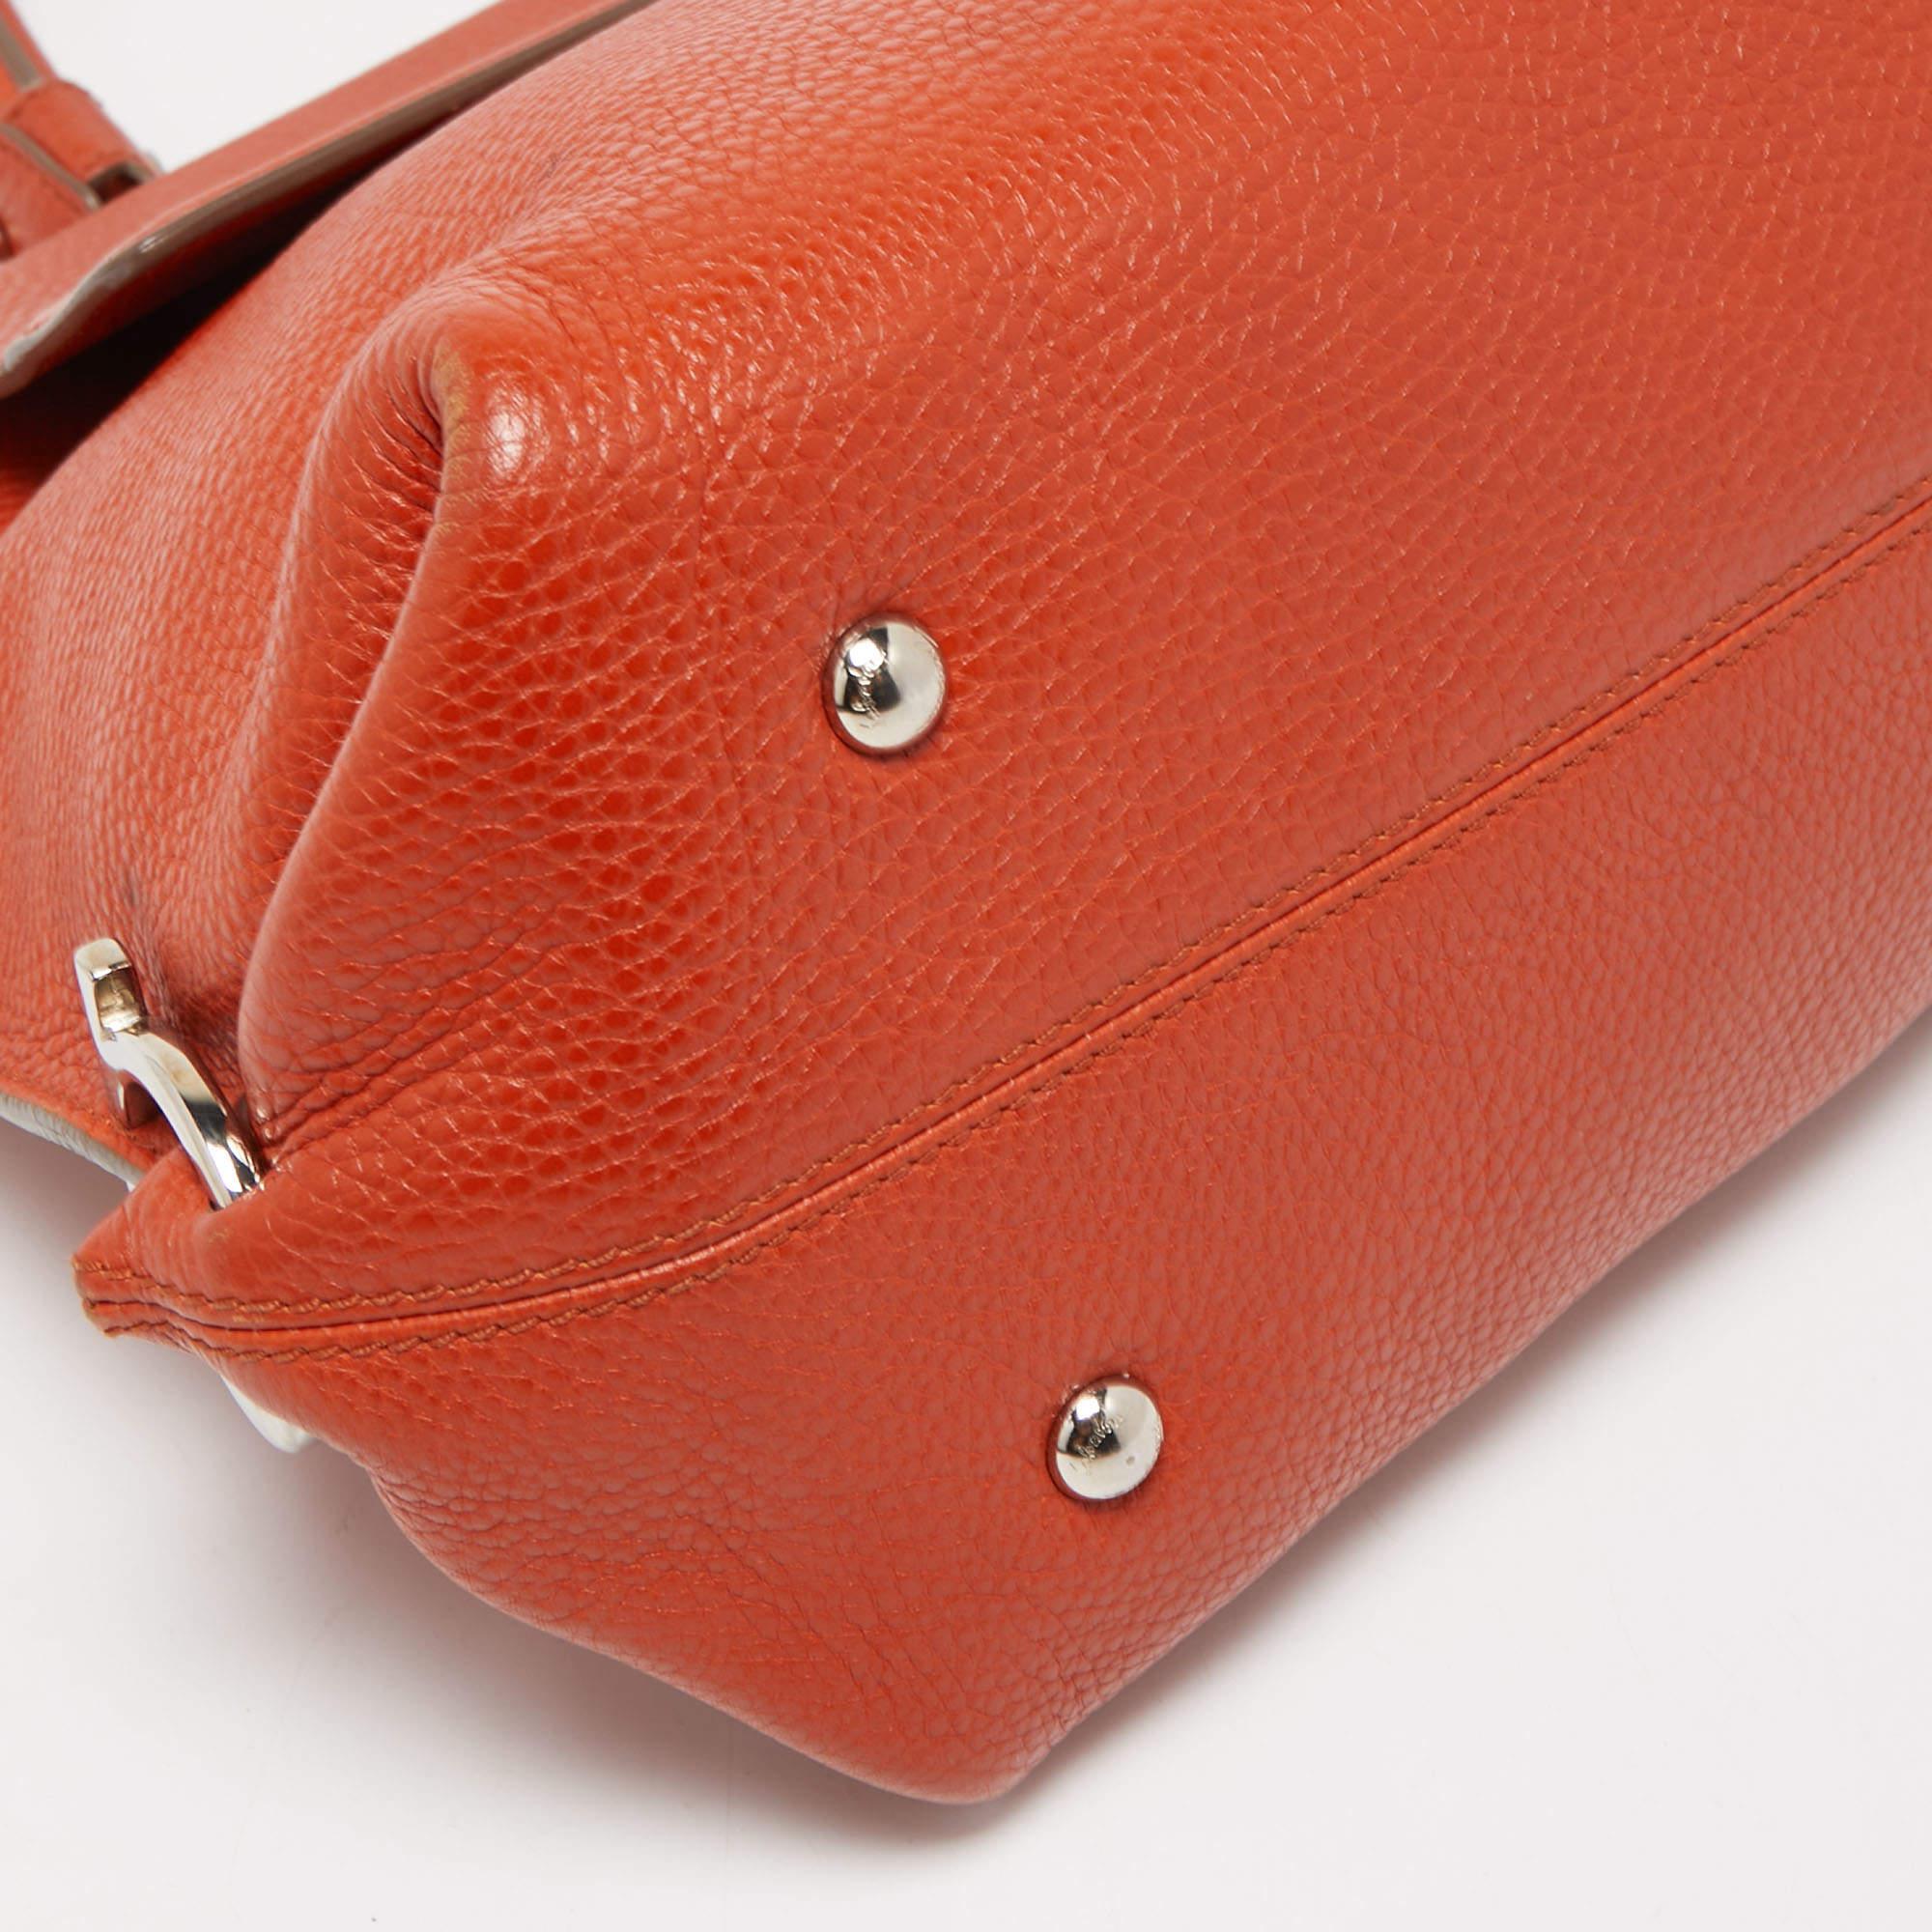 Salvatore Ferragamo Orange Leather Medium Sofia Top Handle Bag 3